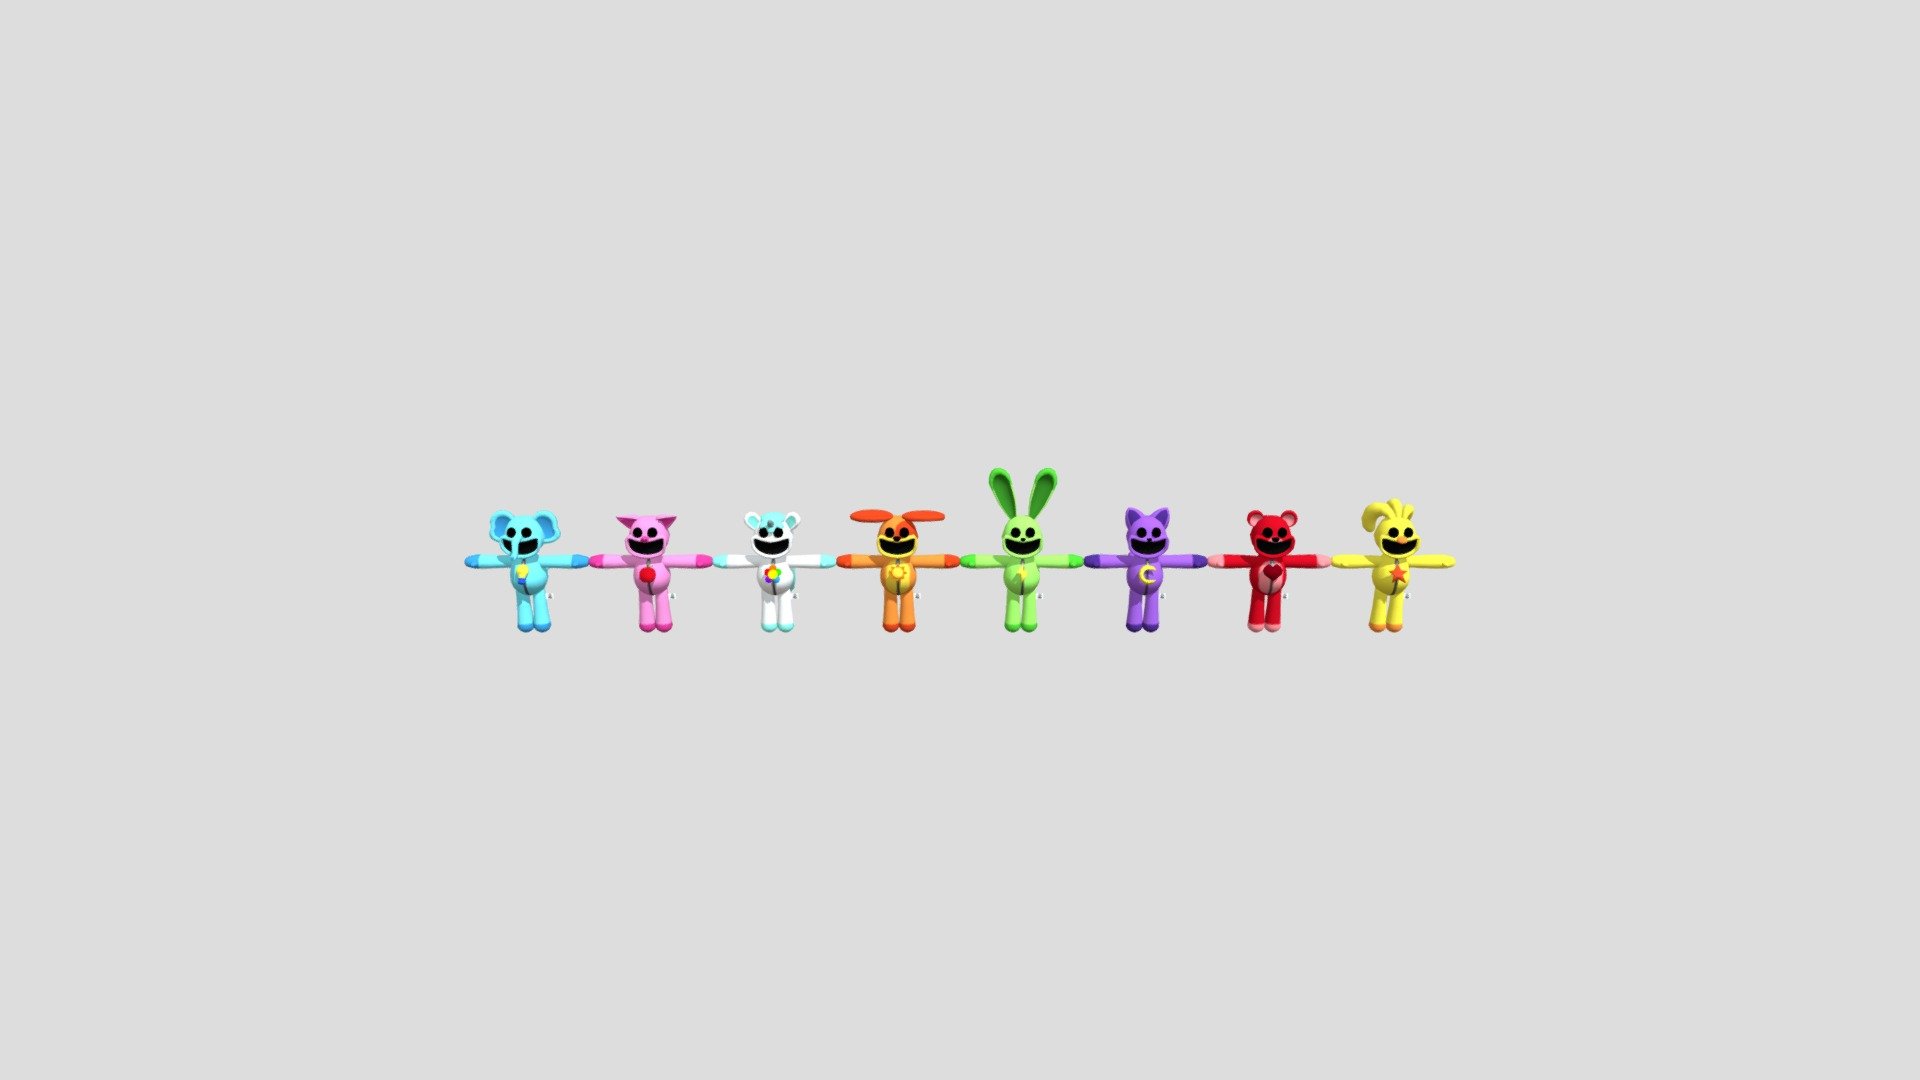 smiling-critters-poppy-playtime - 3D model by epplepos1530 3d model